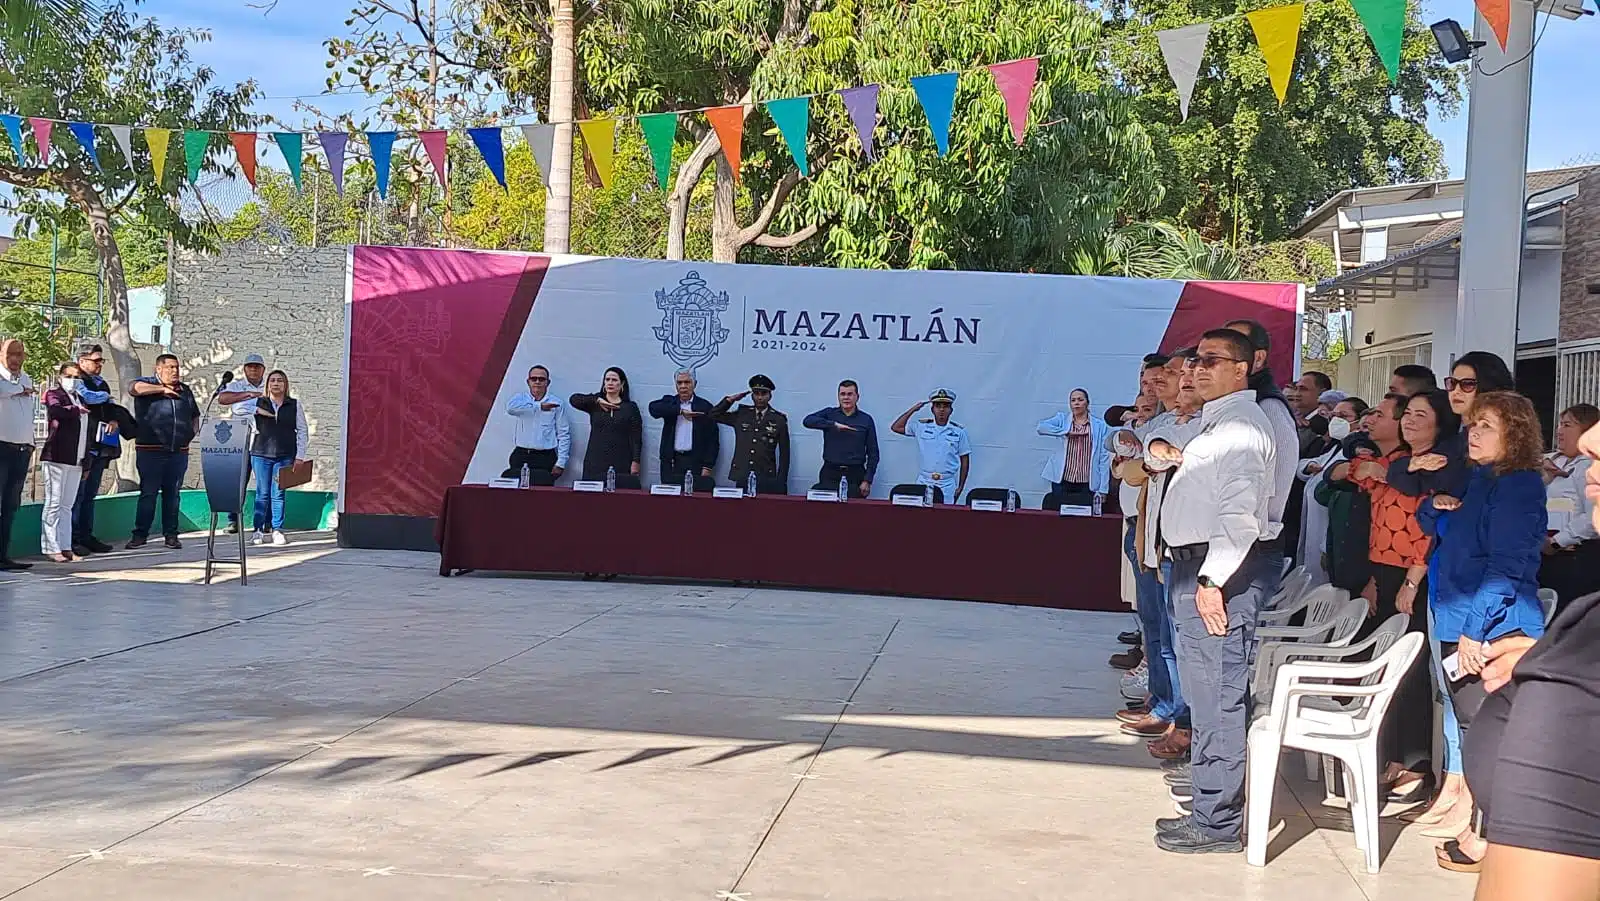 Édgar González Zataráin Lunes Cívico Mazatlán